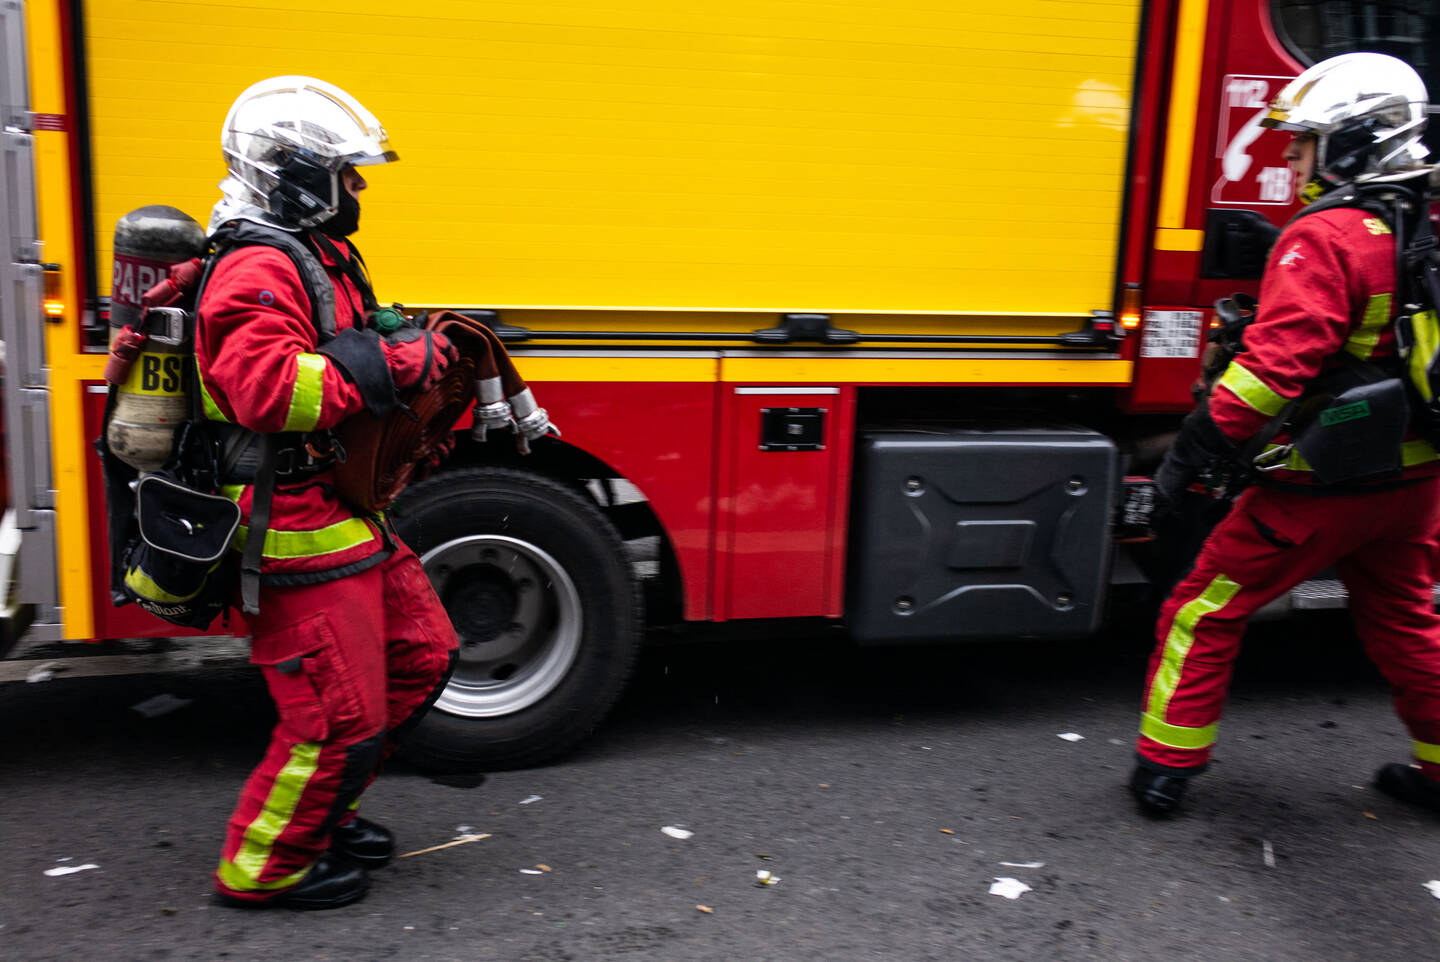 Incendie en France: sept enfants et leur mère périssent asphyxiés